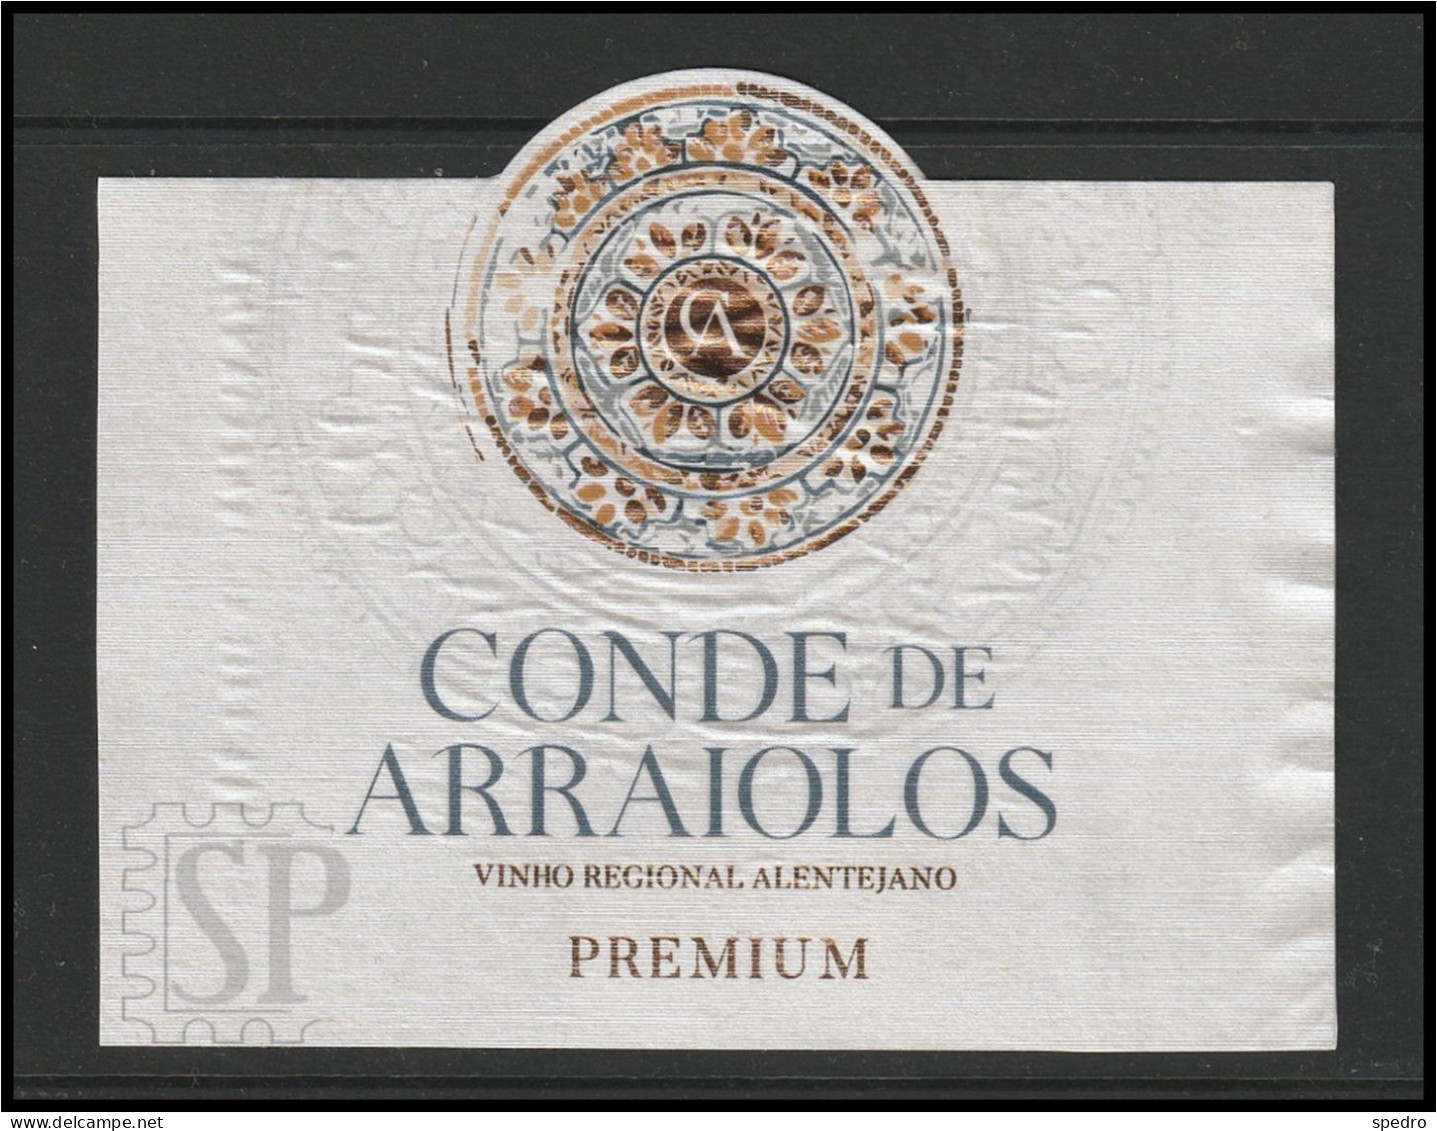 Portugal 2021 Rótulo Vinho Branco Conde De Arraiolos Premium White Wine Vin Blanc Herdade Das Mouras Alentejo - Vino Tinto